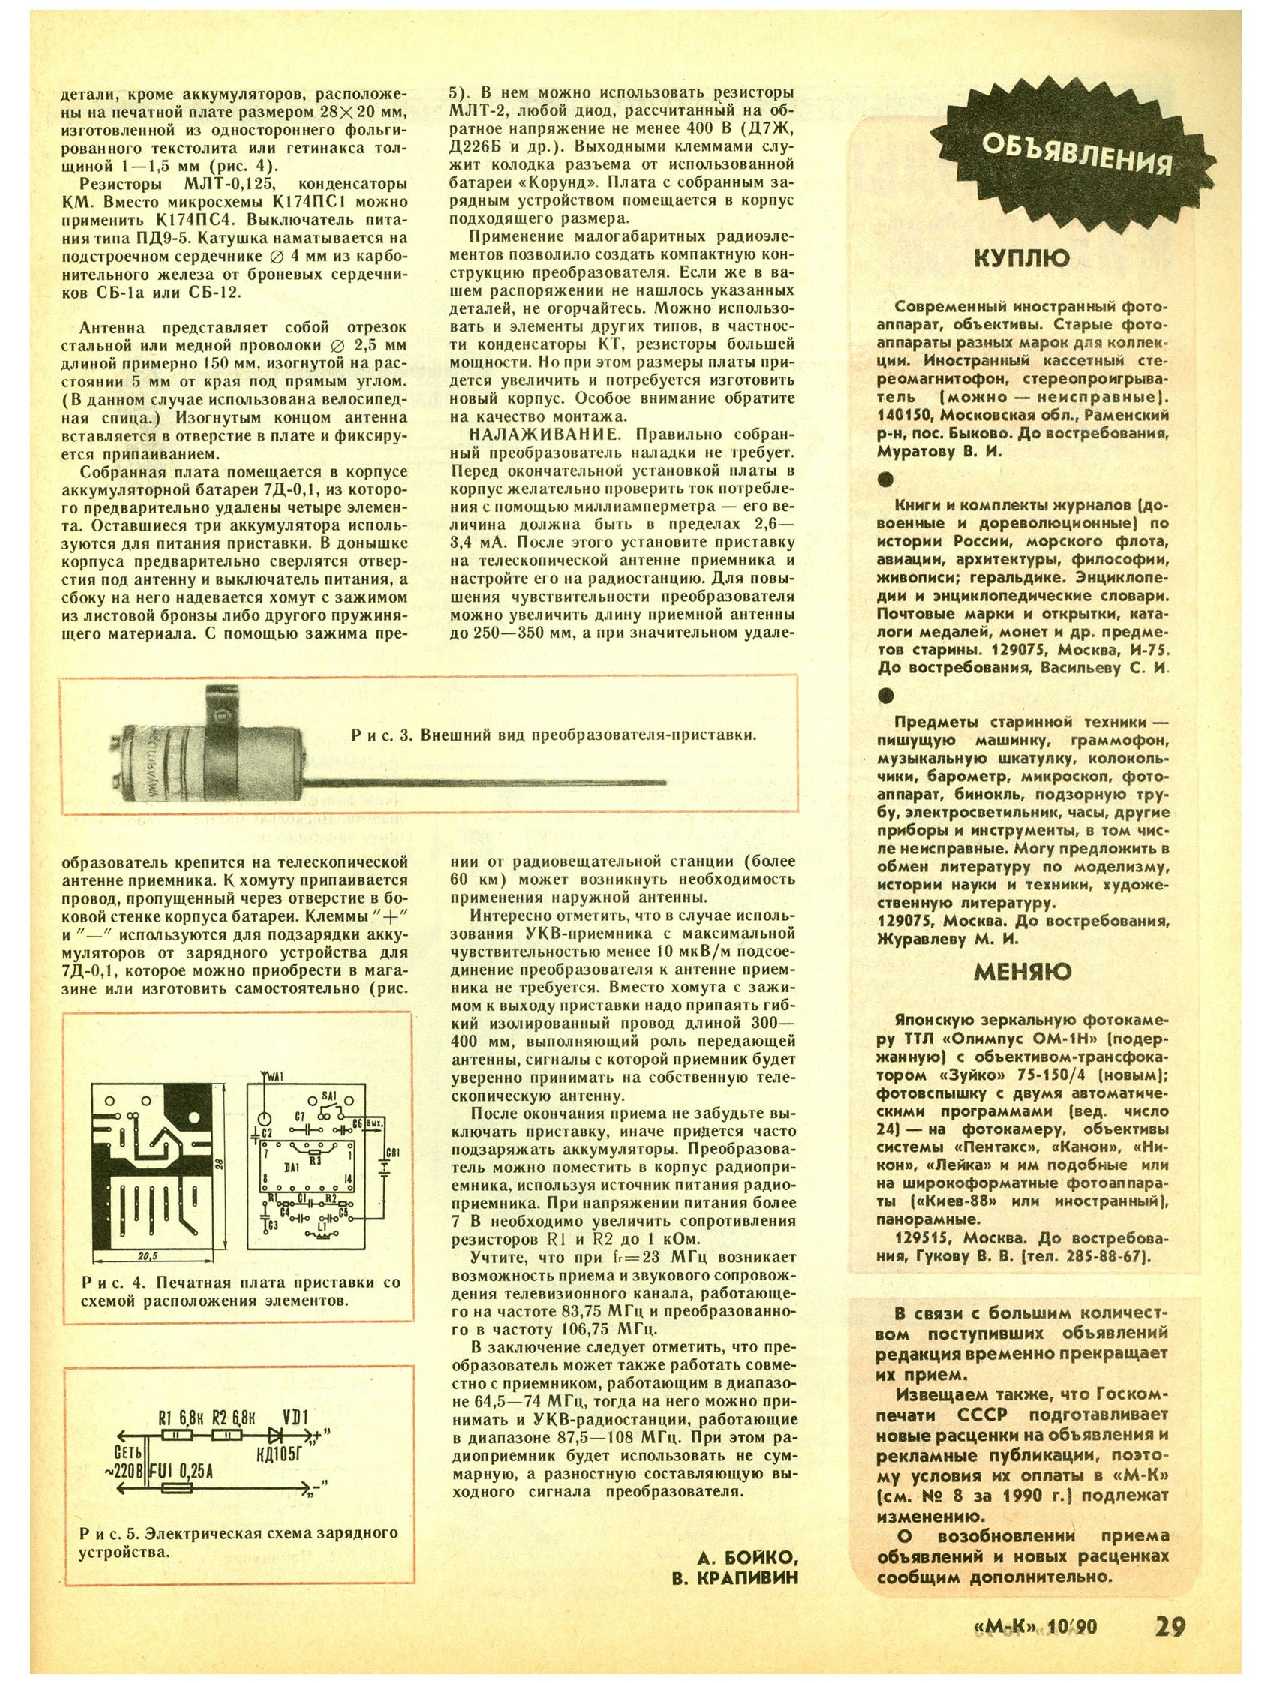 МК 10, 1990, 29 c.